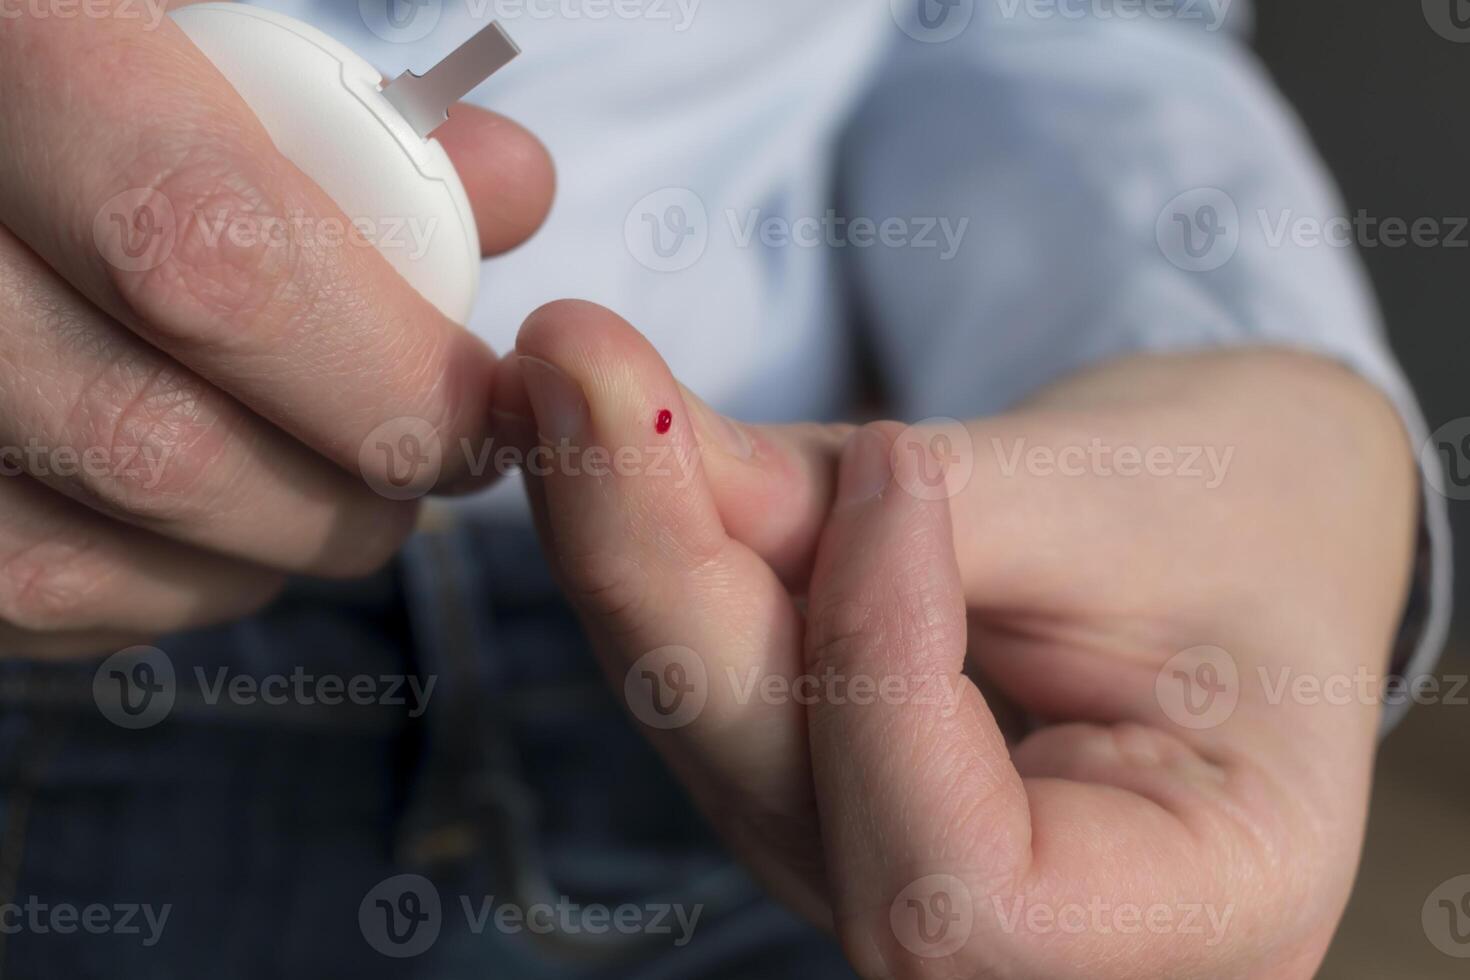 mujer punción su dedo a cheque sangre glucosa nivel con glucómetro, prueba sangre glucosa para diabetes foto